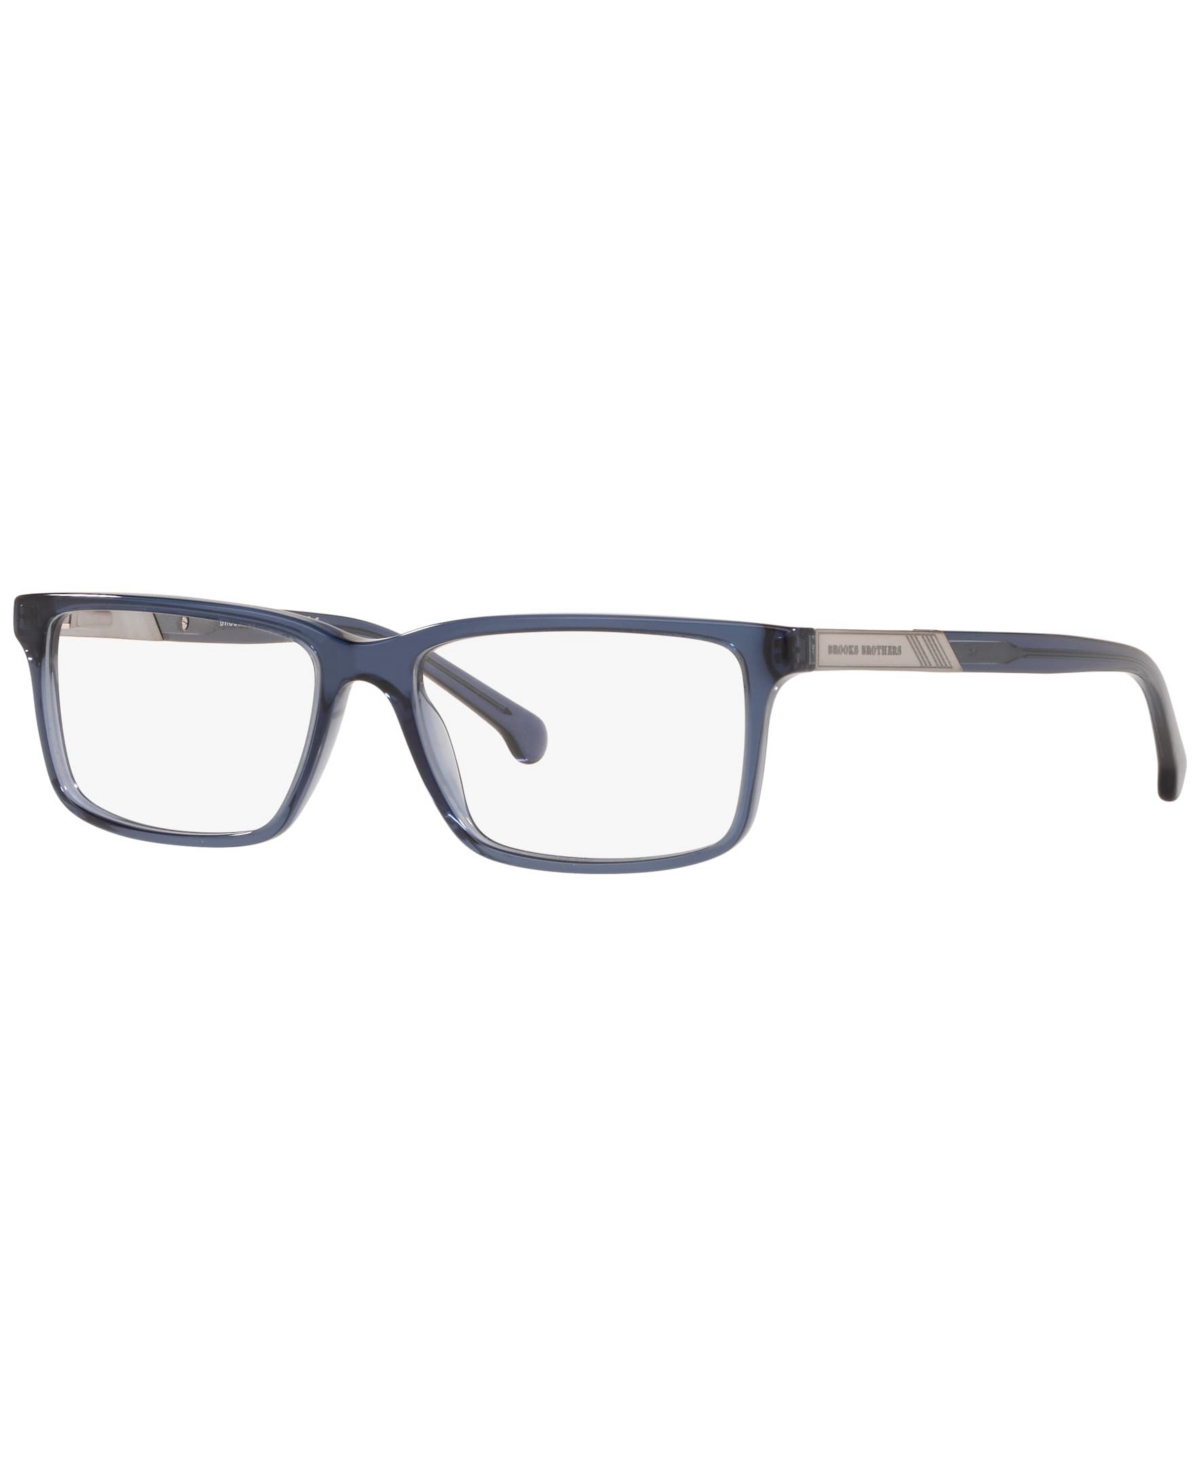 BB2019 Men's Rectangle Eyeglasses - Blue